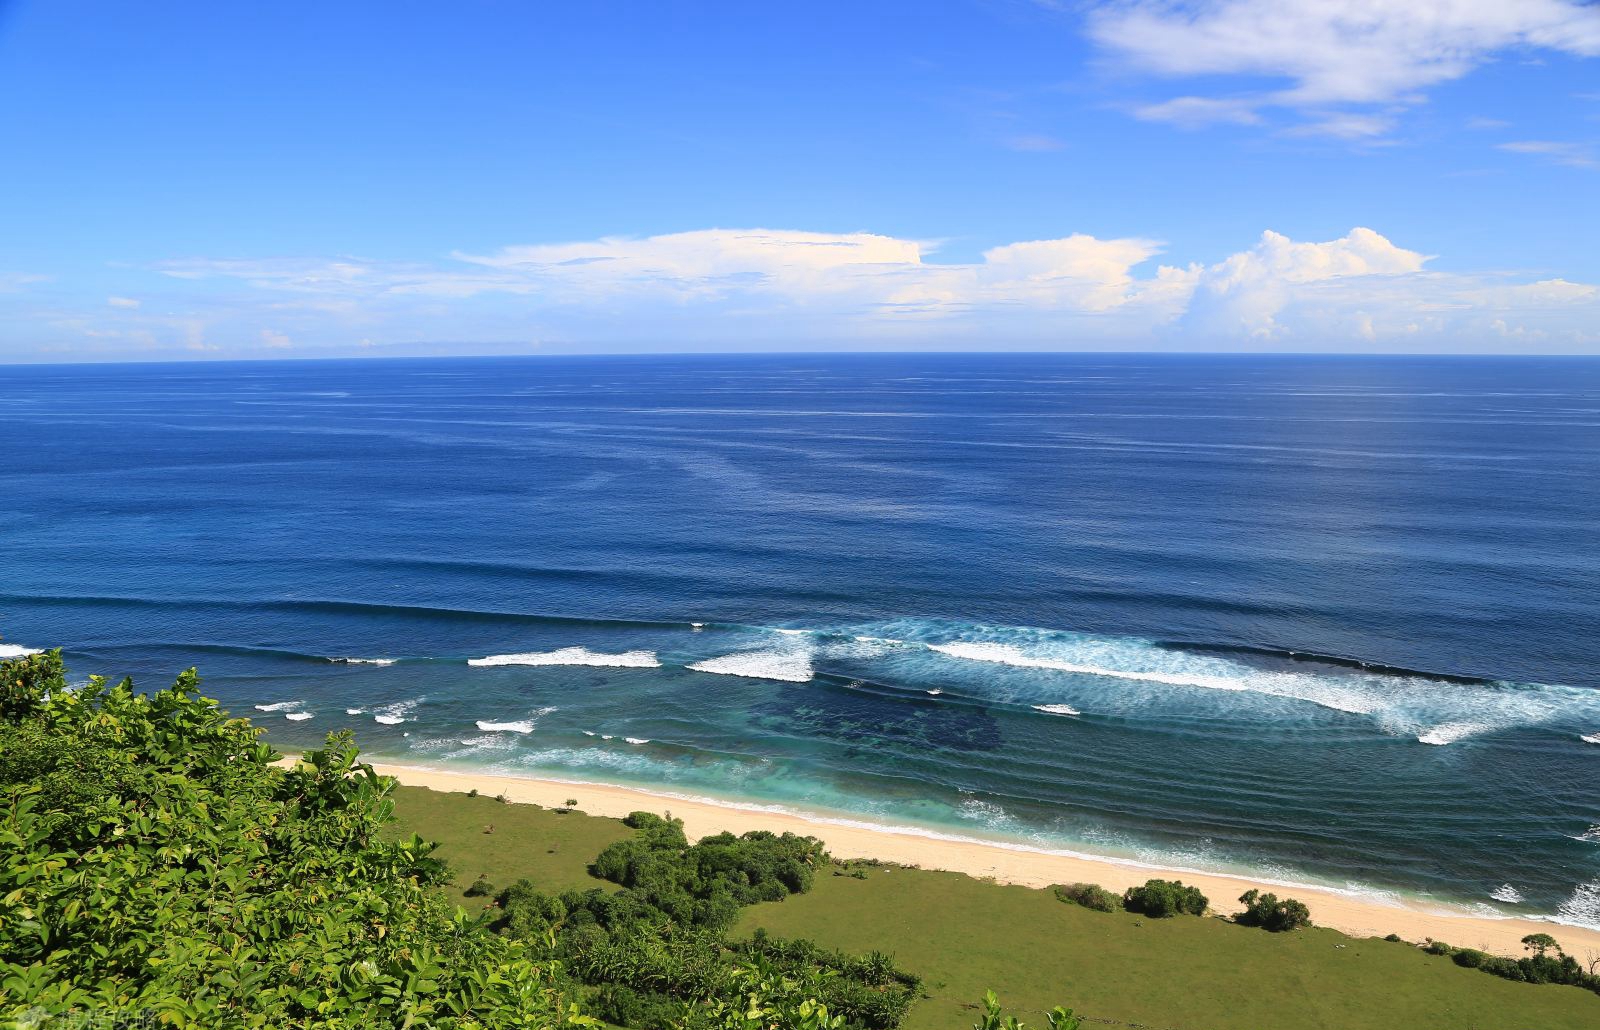 爪哇海河流较多,海岸蜿蜒曲折多海湾盛产金刚石,储量居亚洲之首